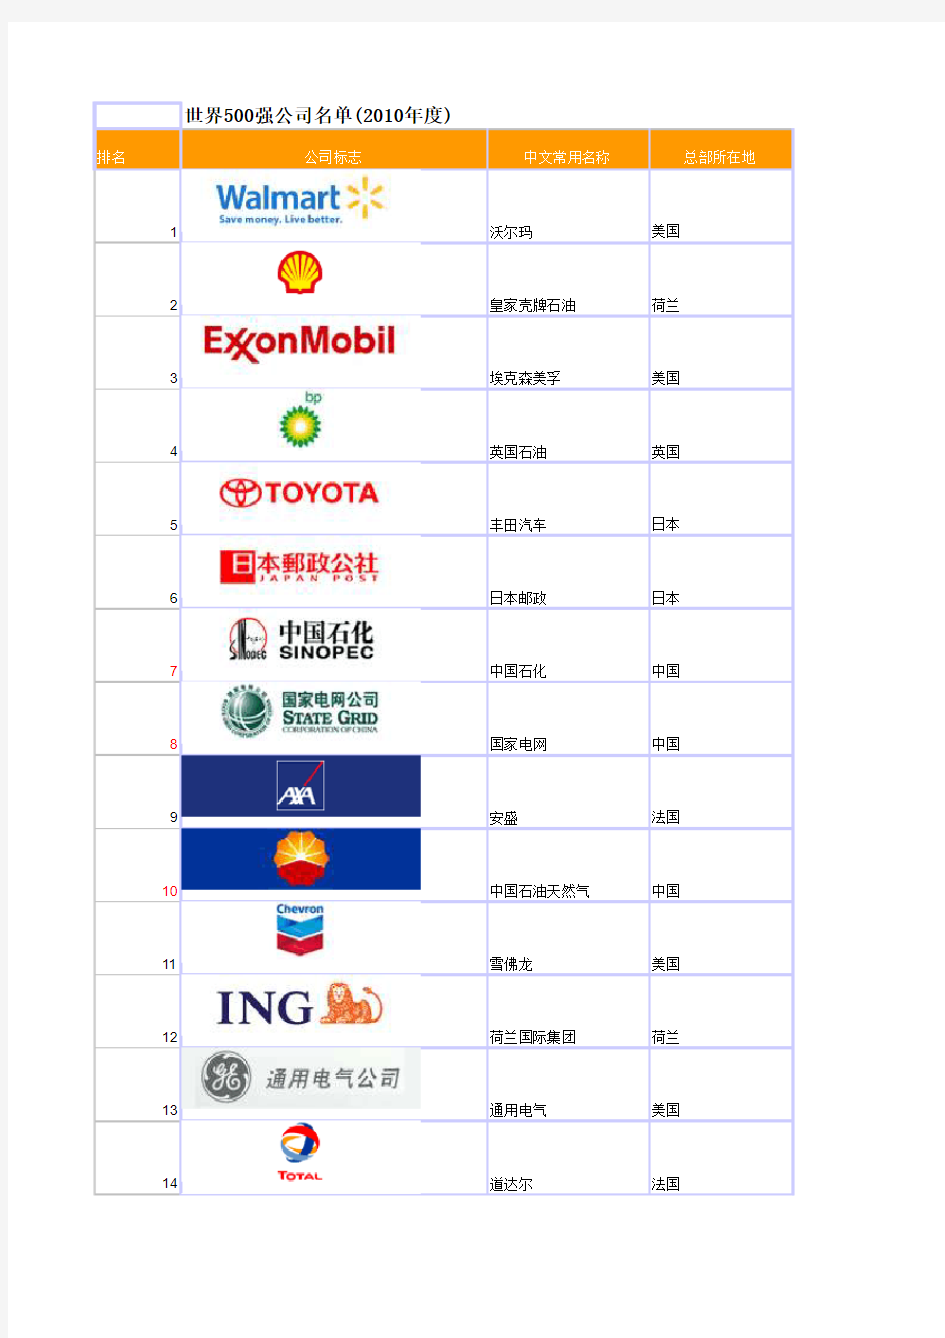 世界500强排名--全球最大的五百家公司名单(1995年至2010年)